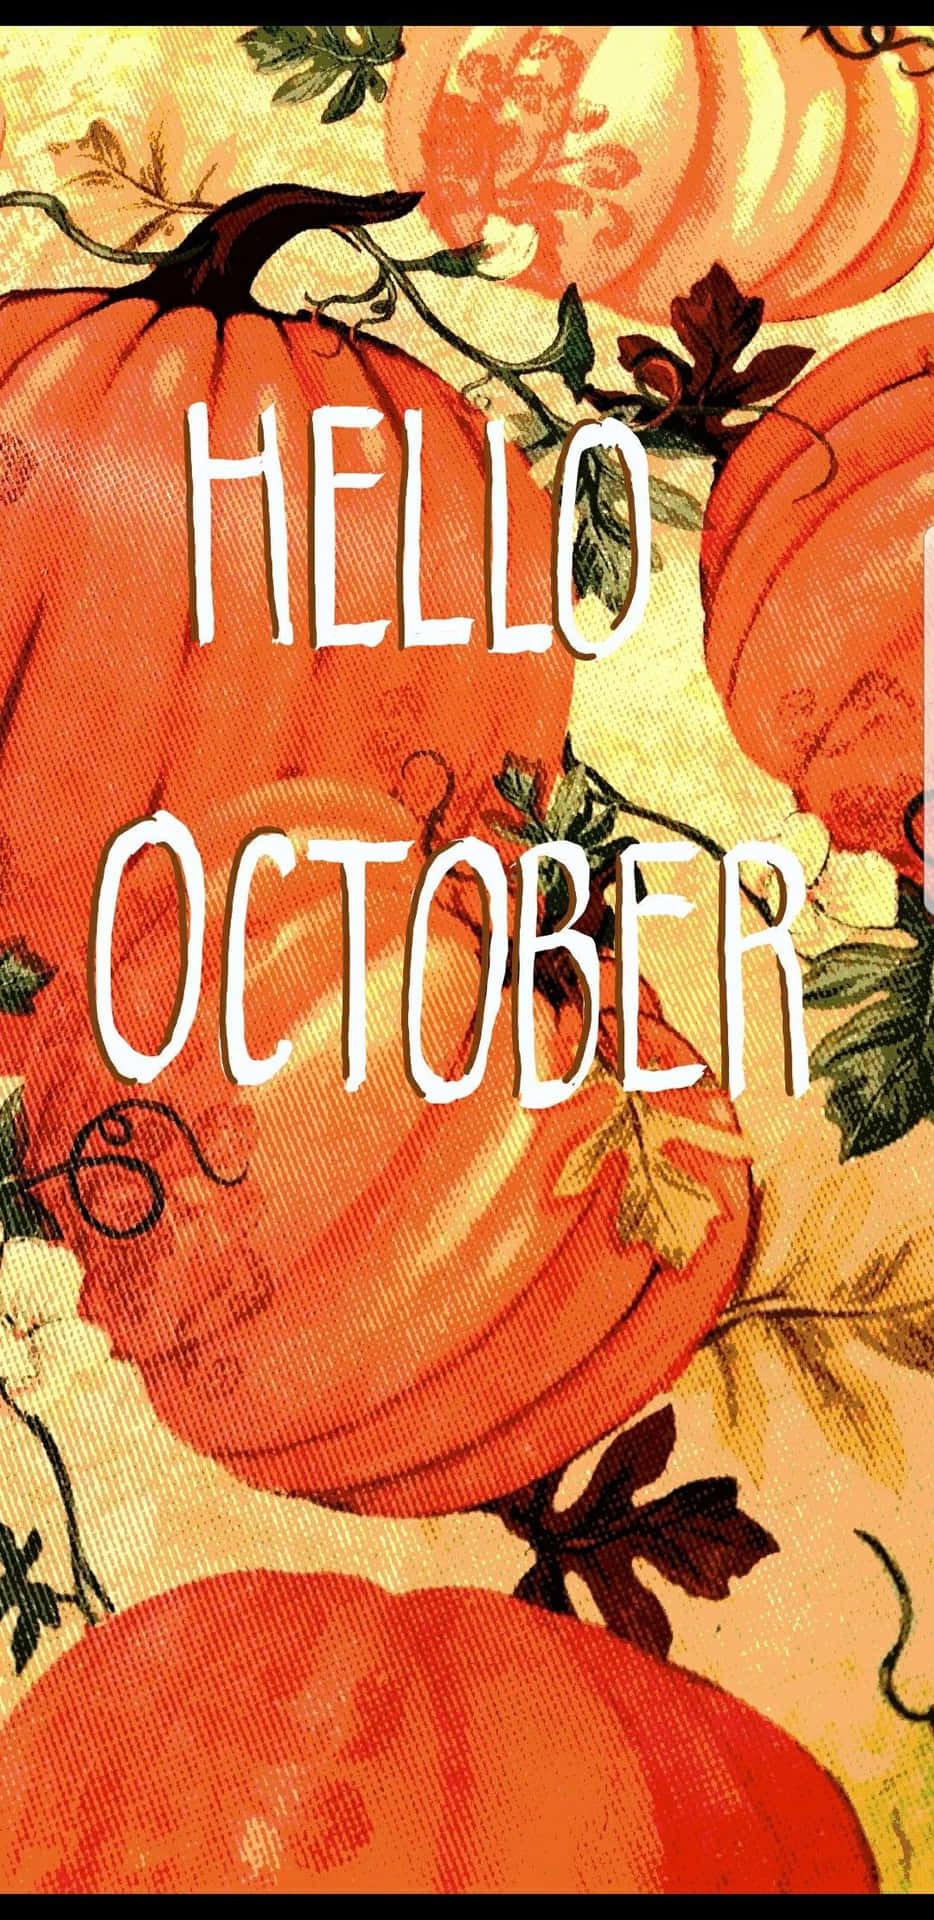 Velkommen Oktober med en festlig græskar vist på din skærm! Wallpaper